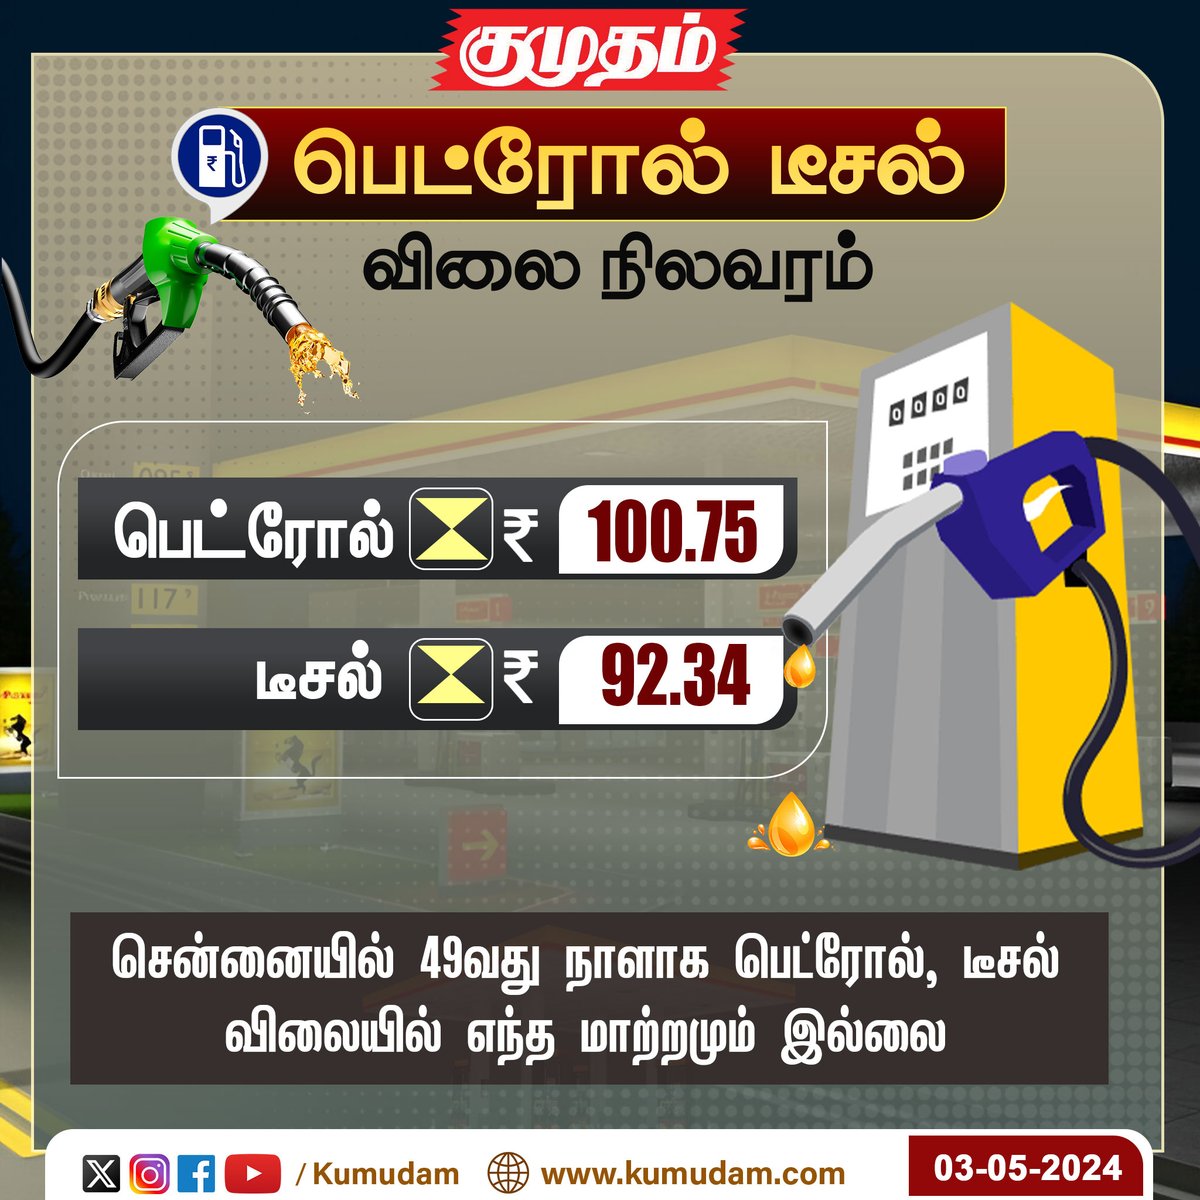 இன்றைய பெட்ரோல், டீசல் விலை நிலவரம்!  

#kumudam  | #PetrolDieselPrice | #Chennai | #fuelprice | #todaynews | #NewsUpdate |